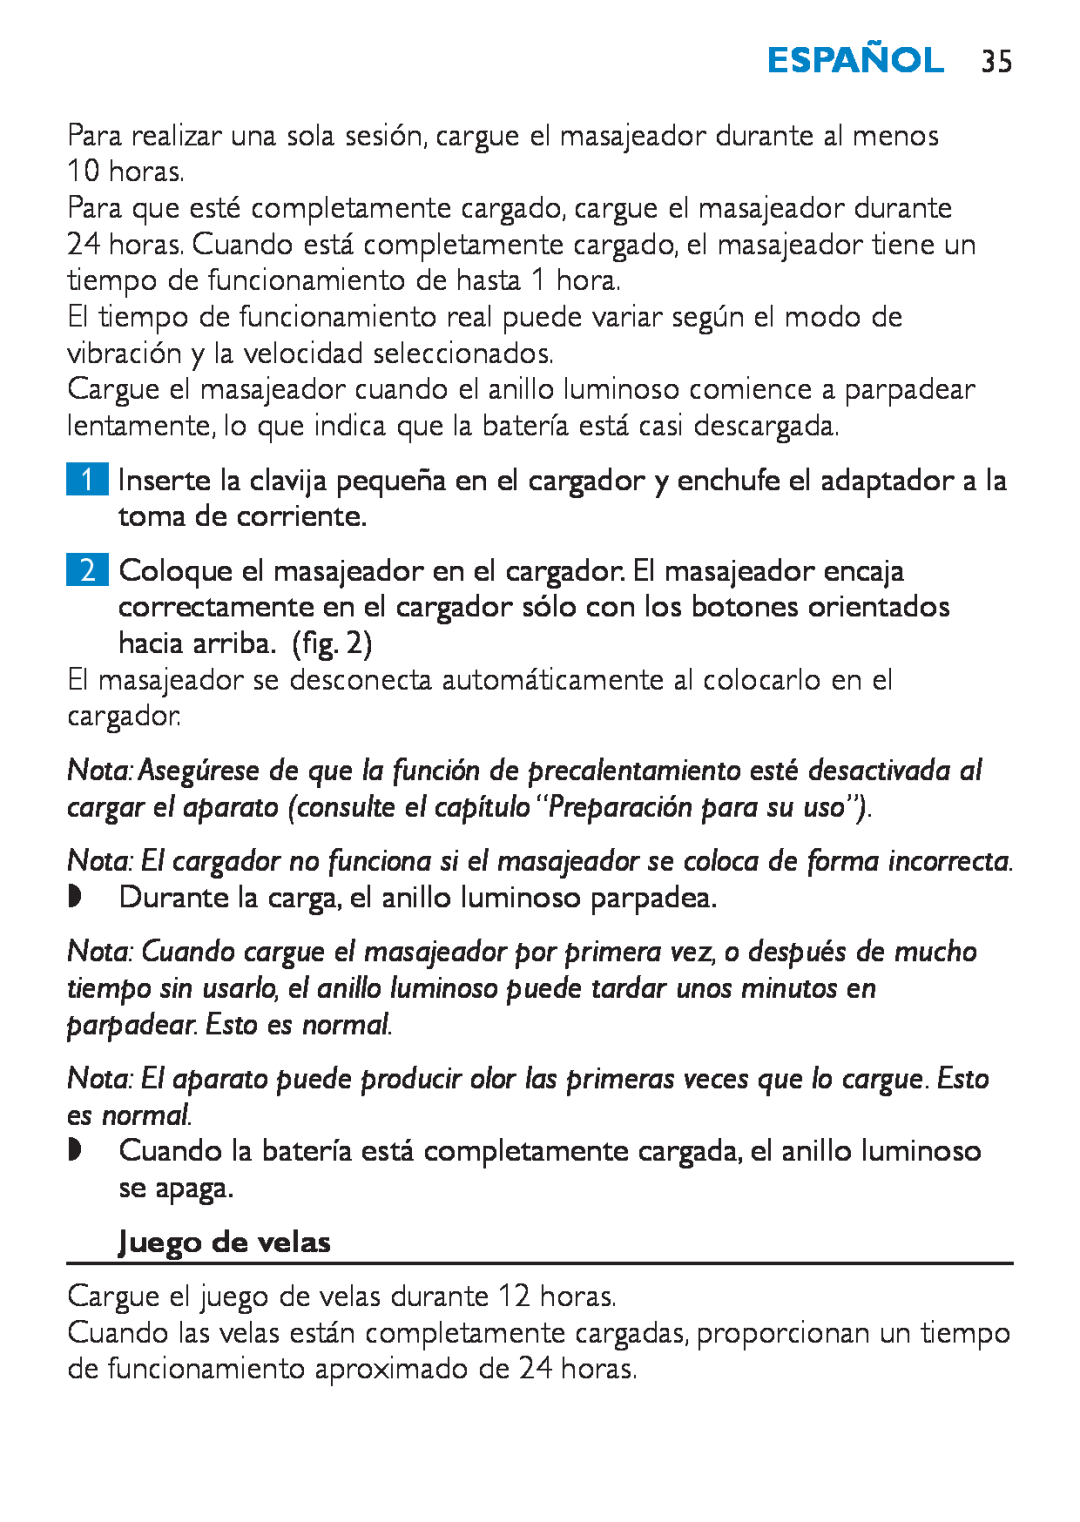 Philips HF8430 manual Juego de velas, Español 